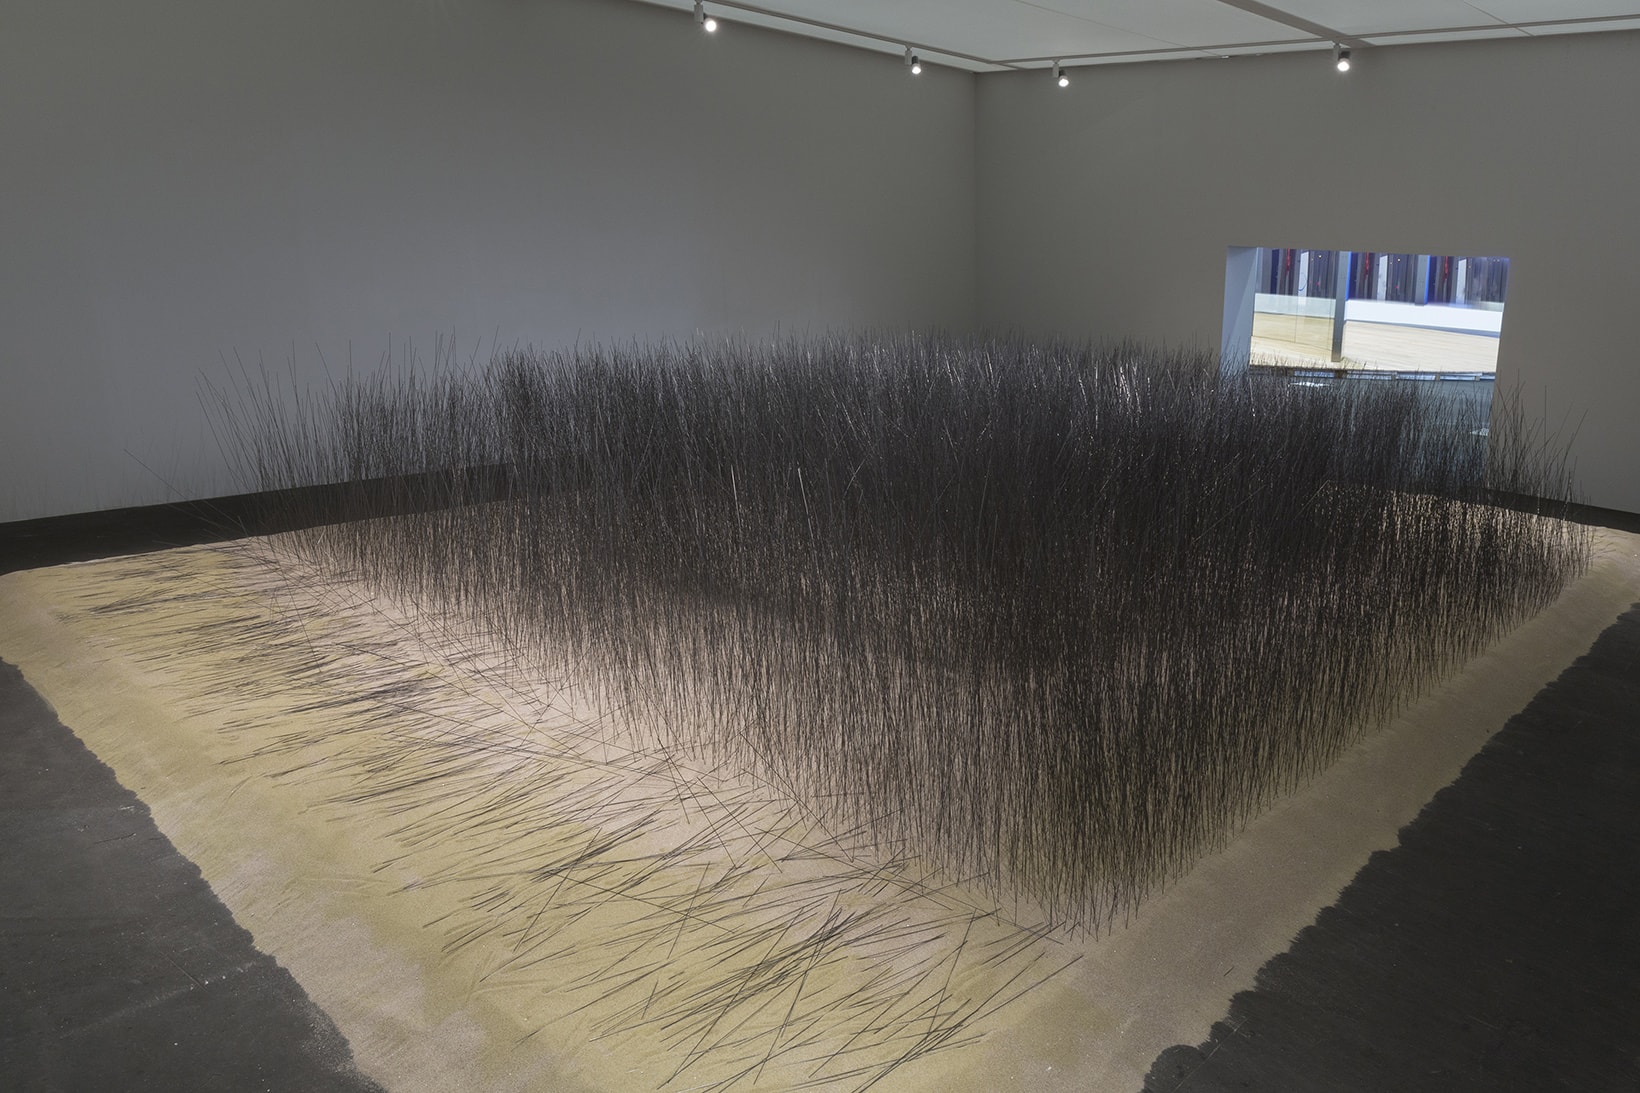 韓國藝術家 Lee Ufan 於 Art Basel 展出大型裝置藝術「Iron Field」